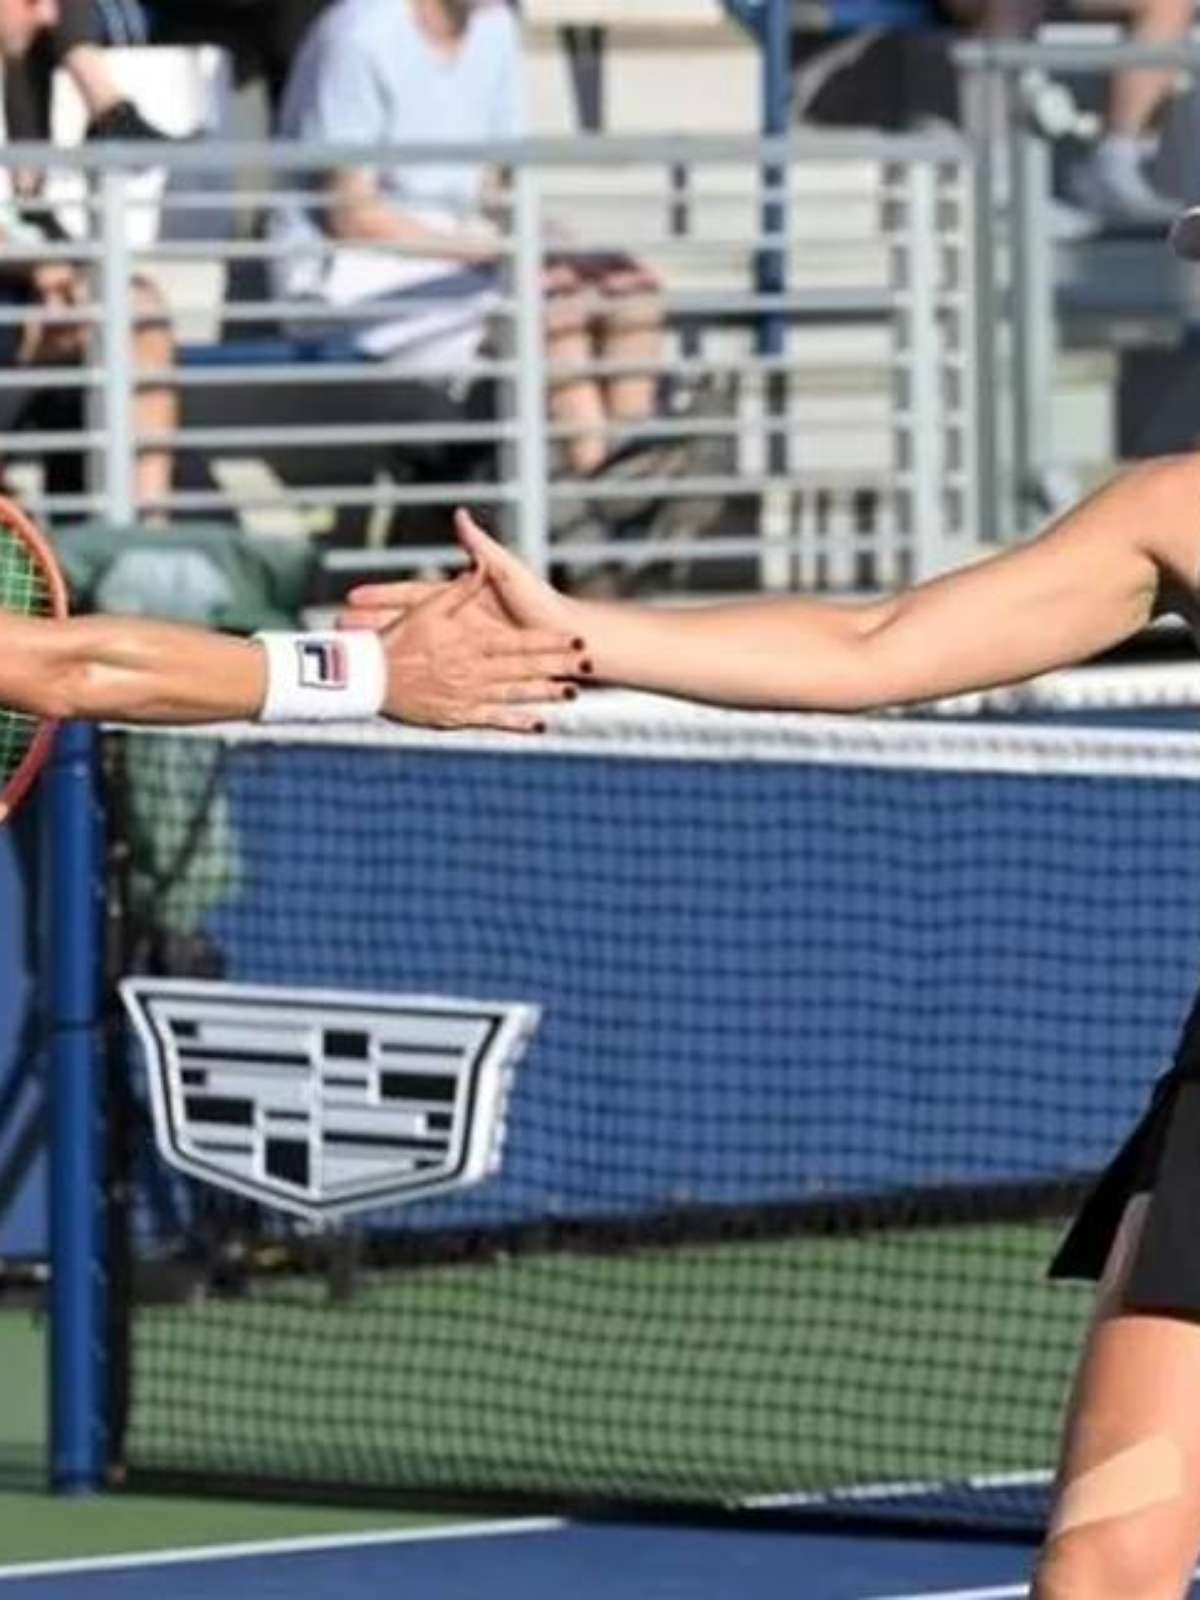 Luisa Stefani sofre lesão e abandona semi do US Open em cadeira de rodas